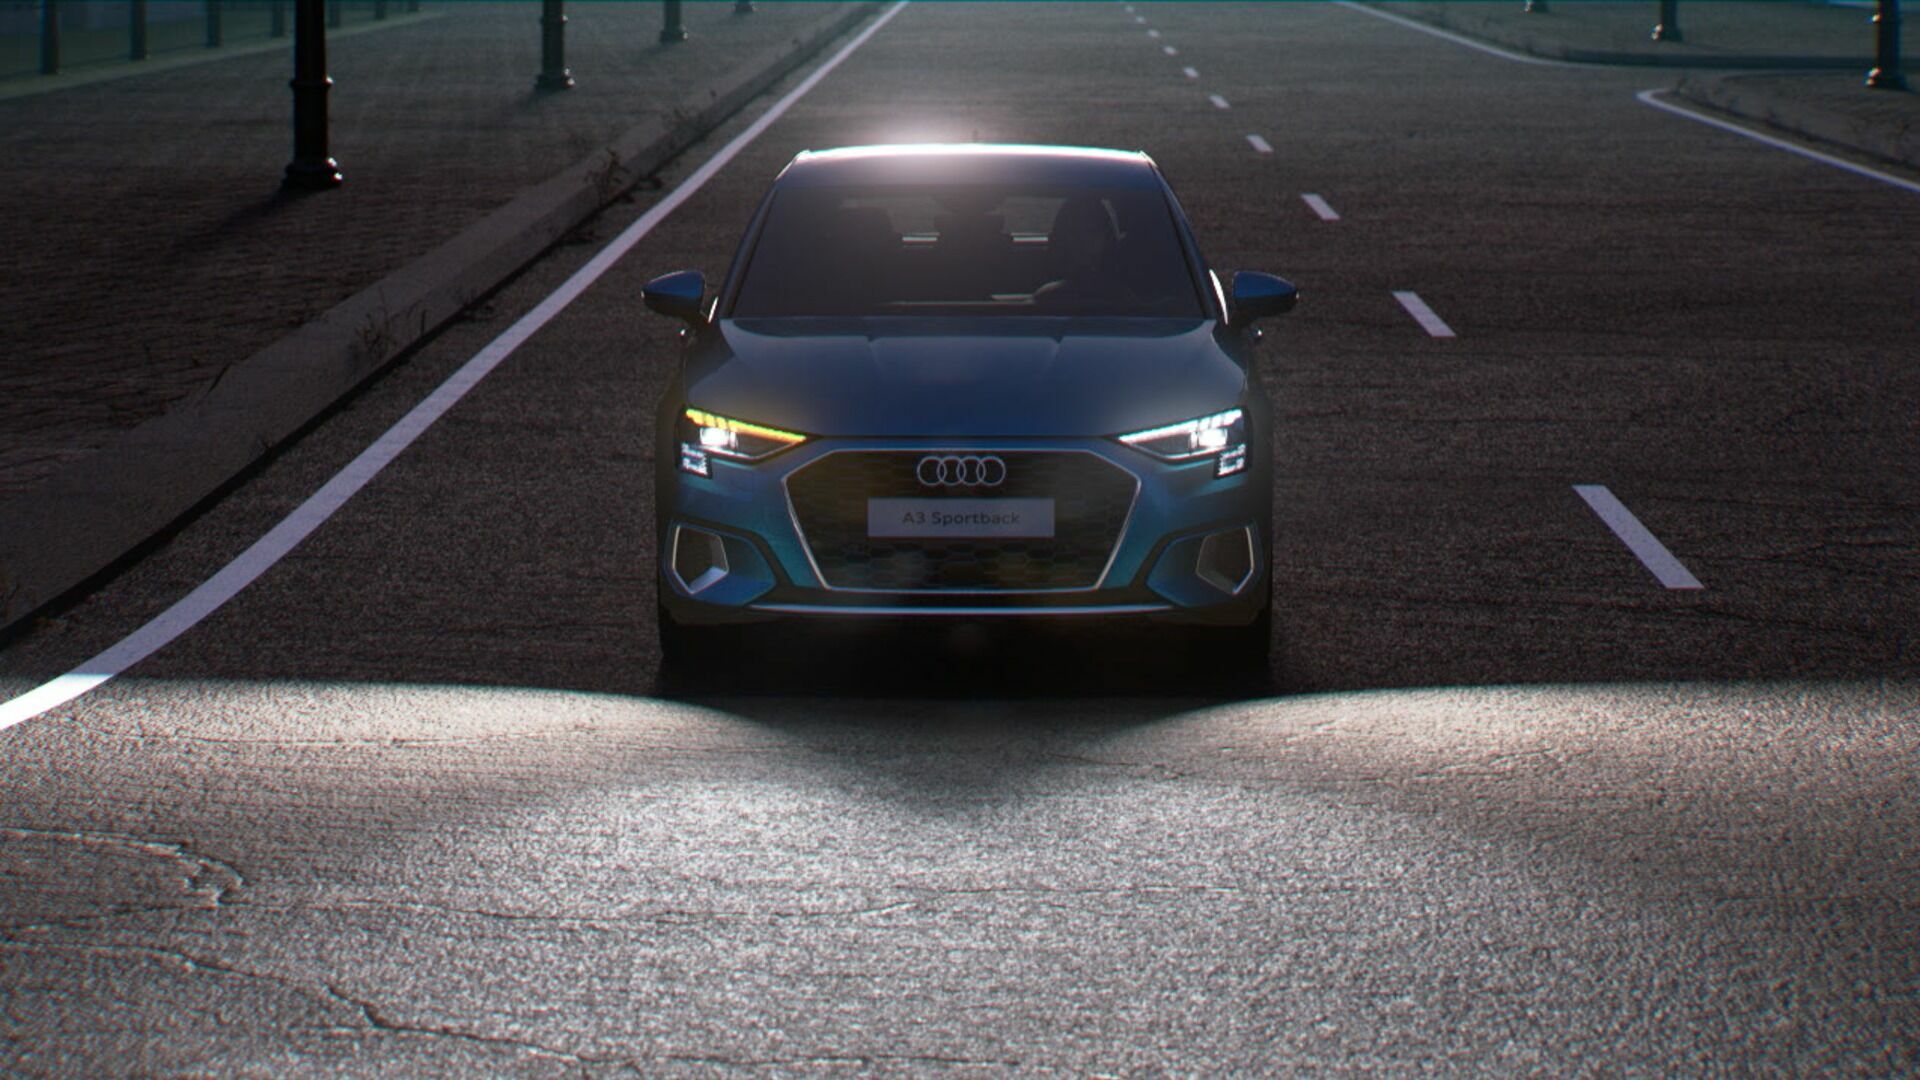 Animation: Audi A3 Sportback – lighting technology